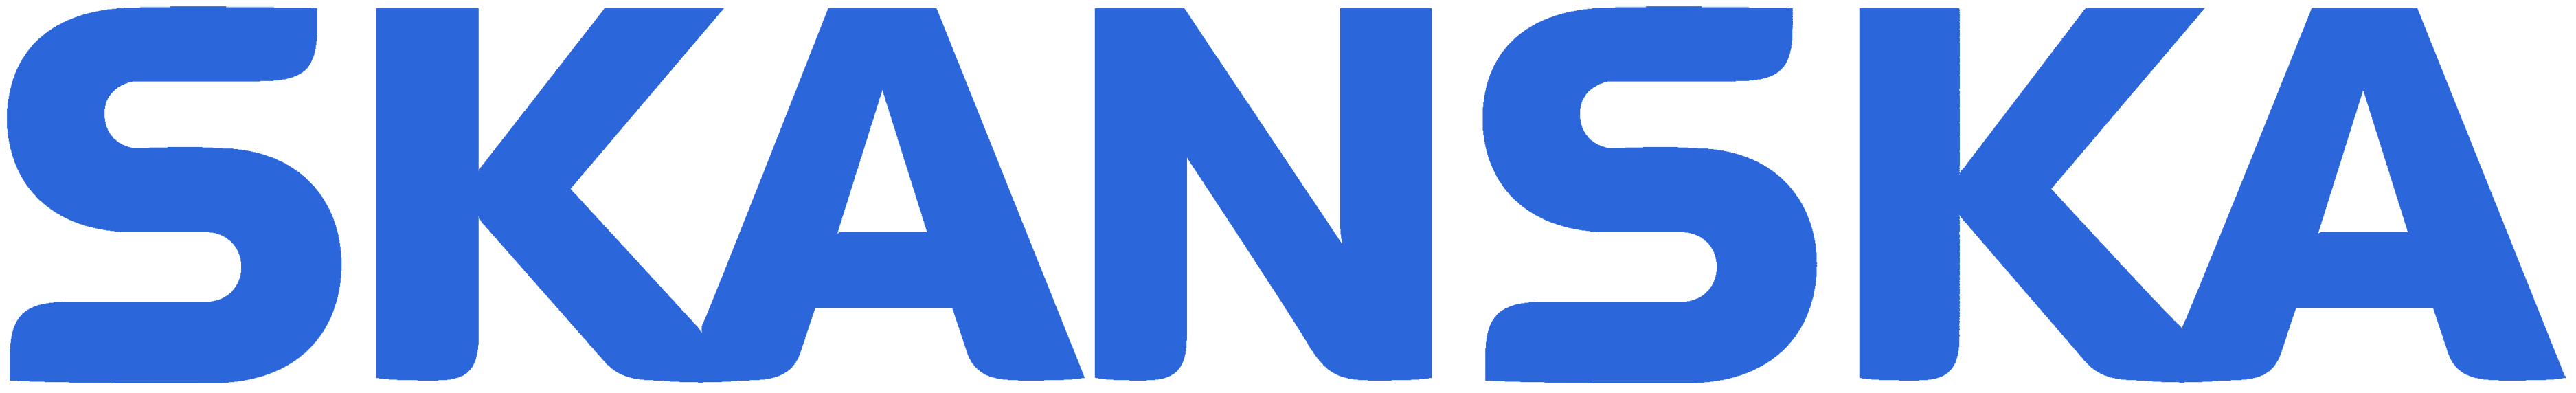 Skanska logo